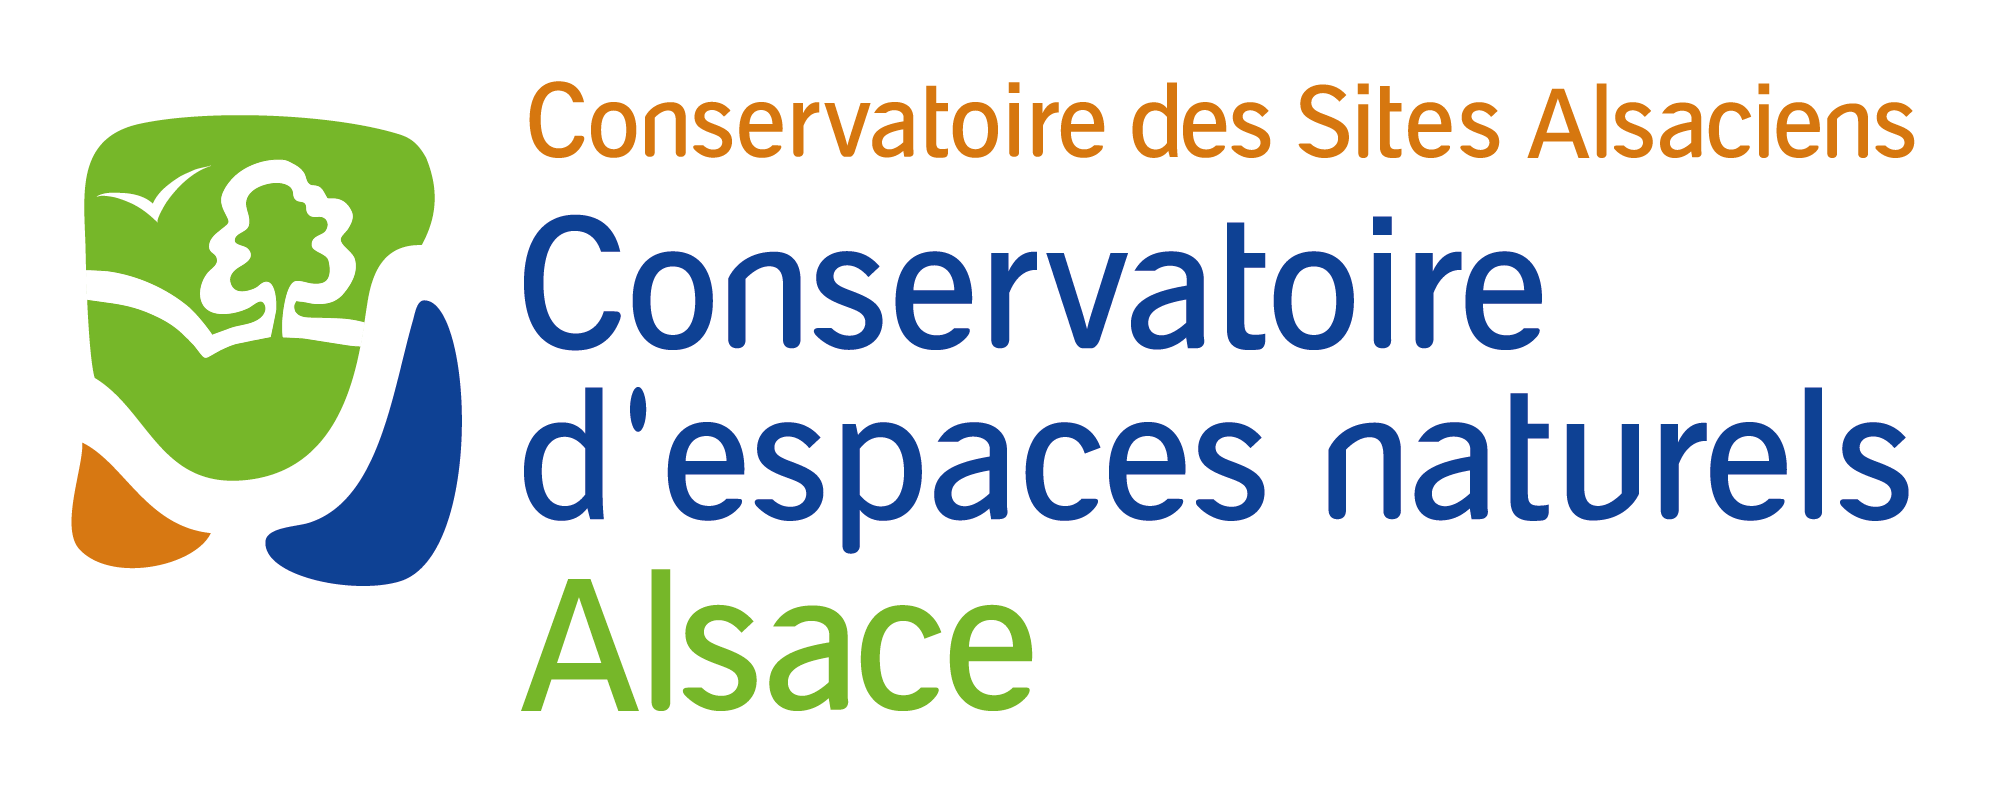 Conservatoire des Sites Alsaciens (CSA)